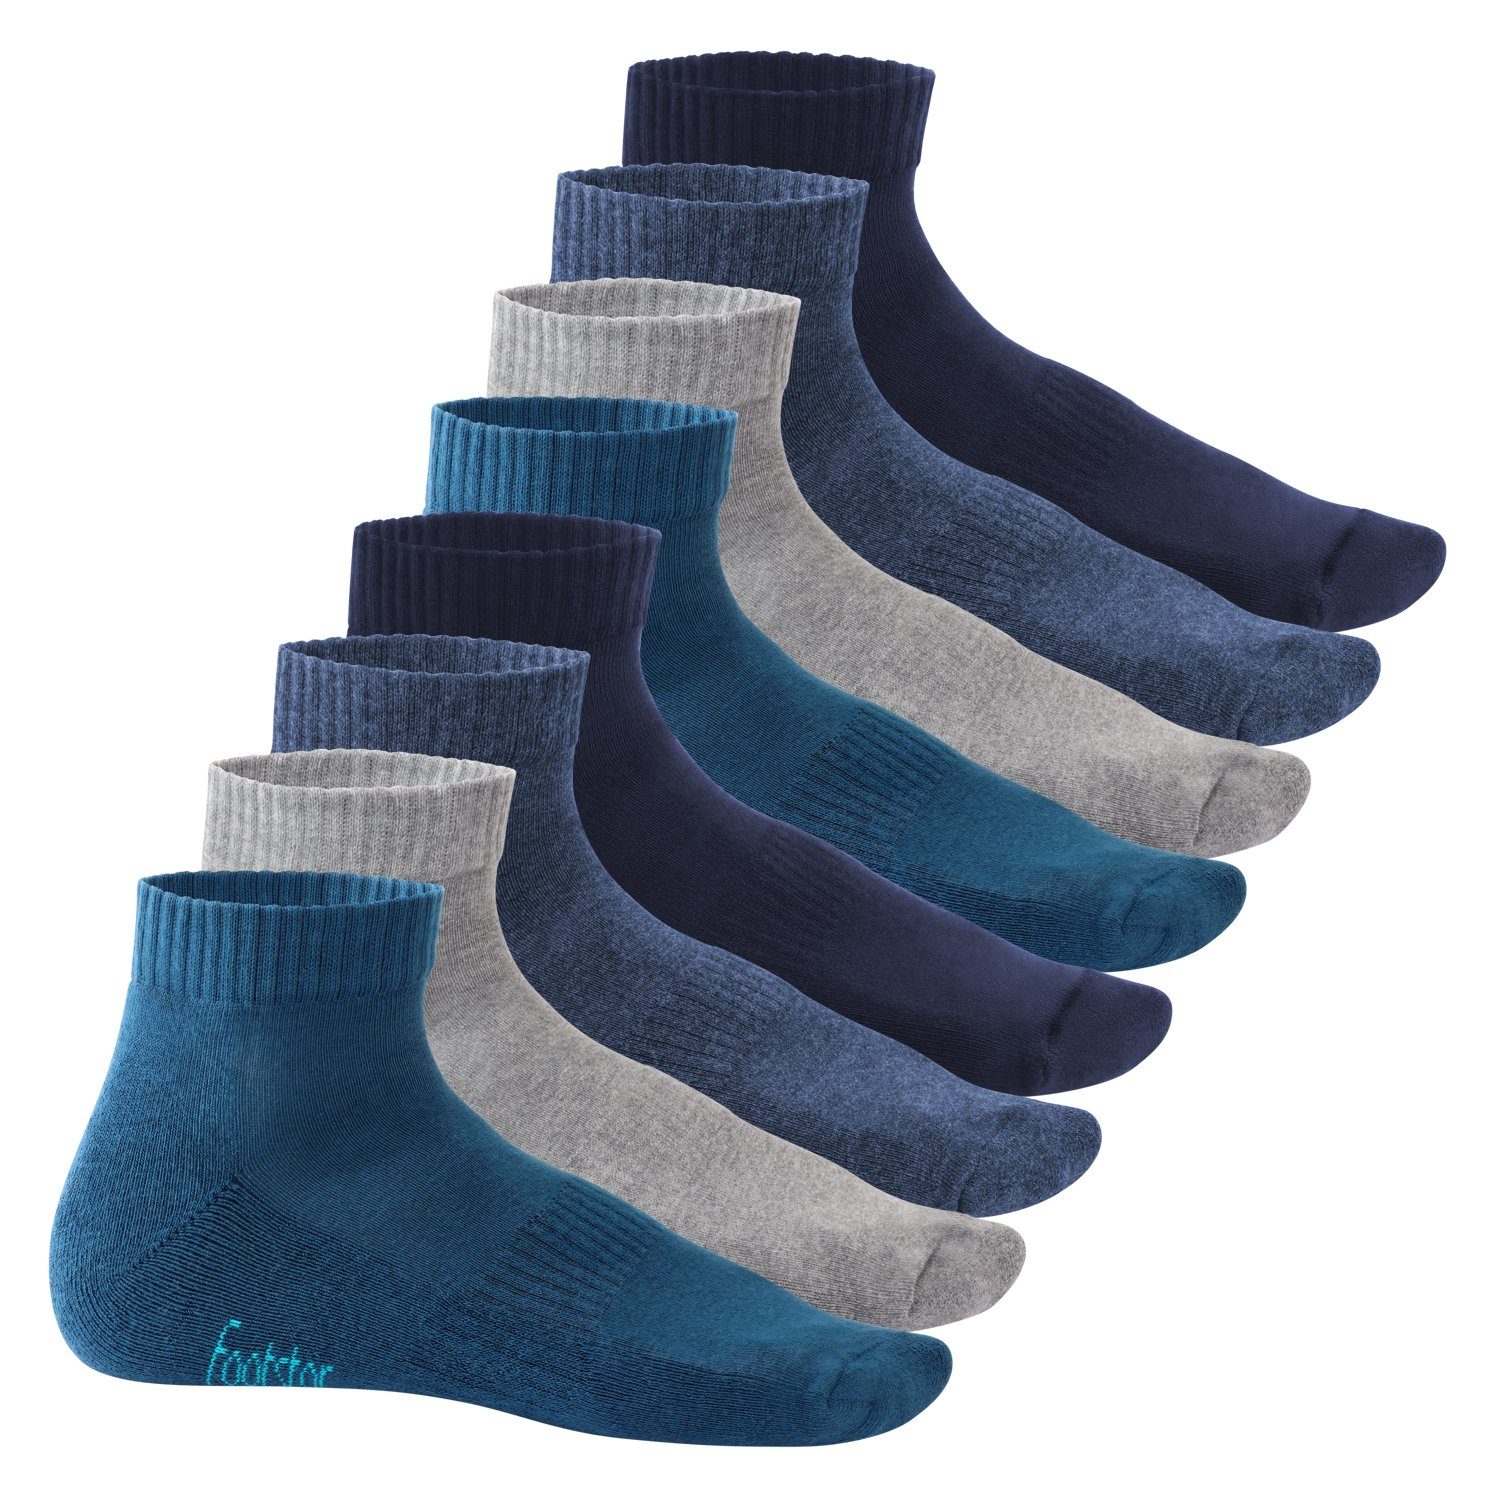 Footstar Kurzsocken Damen & Herren Kurzschaft Socken, Frottee-Sohle (8 Paar) Jeans